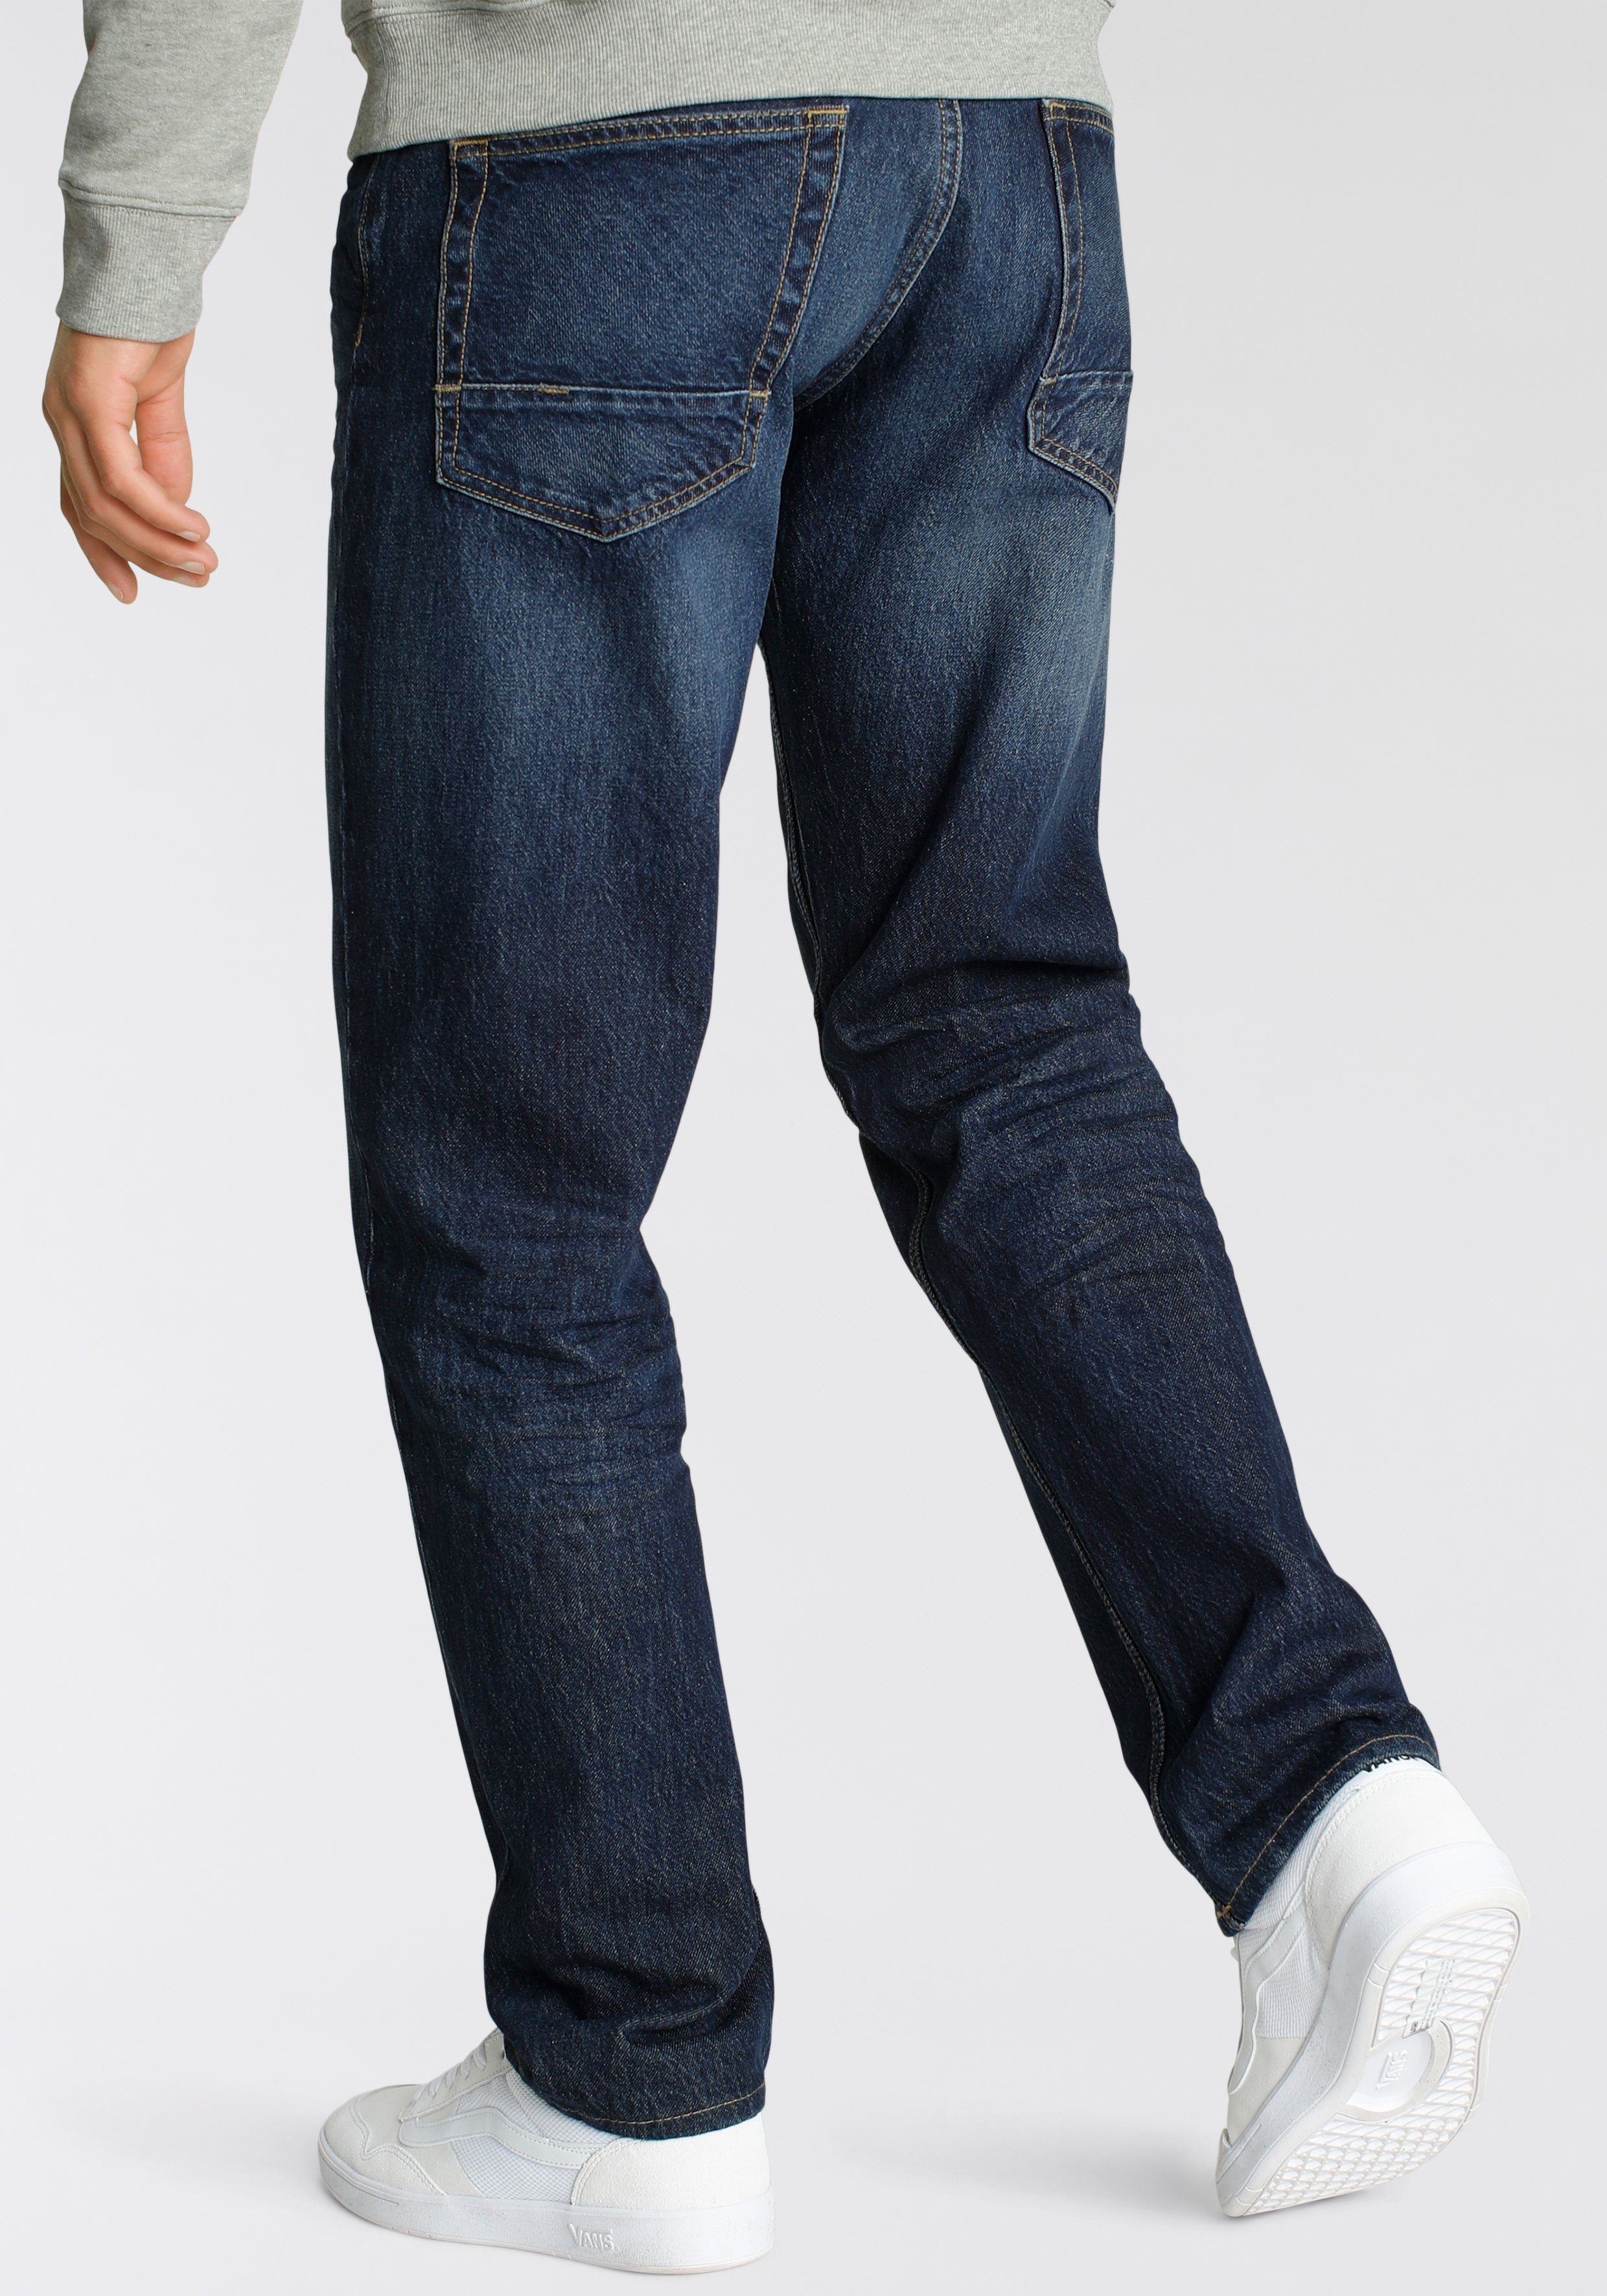 & Alife Loose-fit-Jeans dark durch wassersparende Kickin Ozon Wash Produktion blue Ökologische, AlecAK